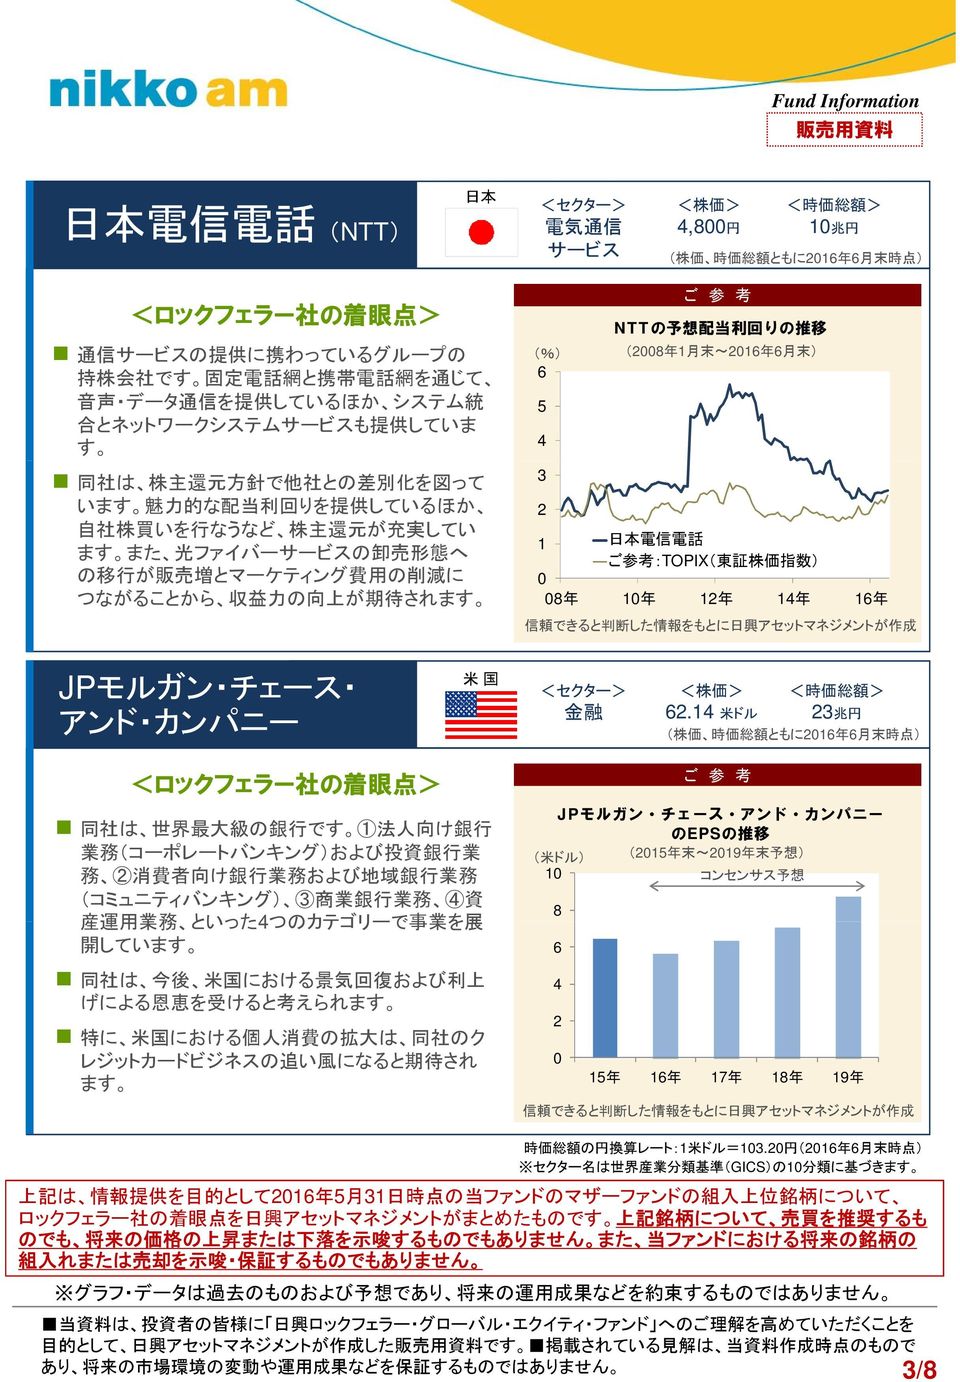 2 NTTの 予 想 配 当 利 回 りの 推 移 (2008 年 1 月 末 ~2016 年 6 月 末 ) 1 日 本 電 信 電 話 :TOPIX( 東 証 株 価 指 数 ) 0 08 年 10 年 12 年 14 年 16 年 信 頼 できると 判 断 した 情 報 をもとに 日 興 アセットマネジメントが 作 成 JPモルガン チェース アンド カンパニー 米 国 金 融 62.